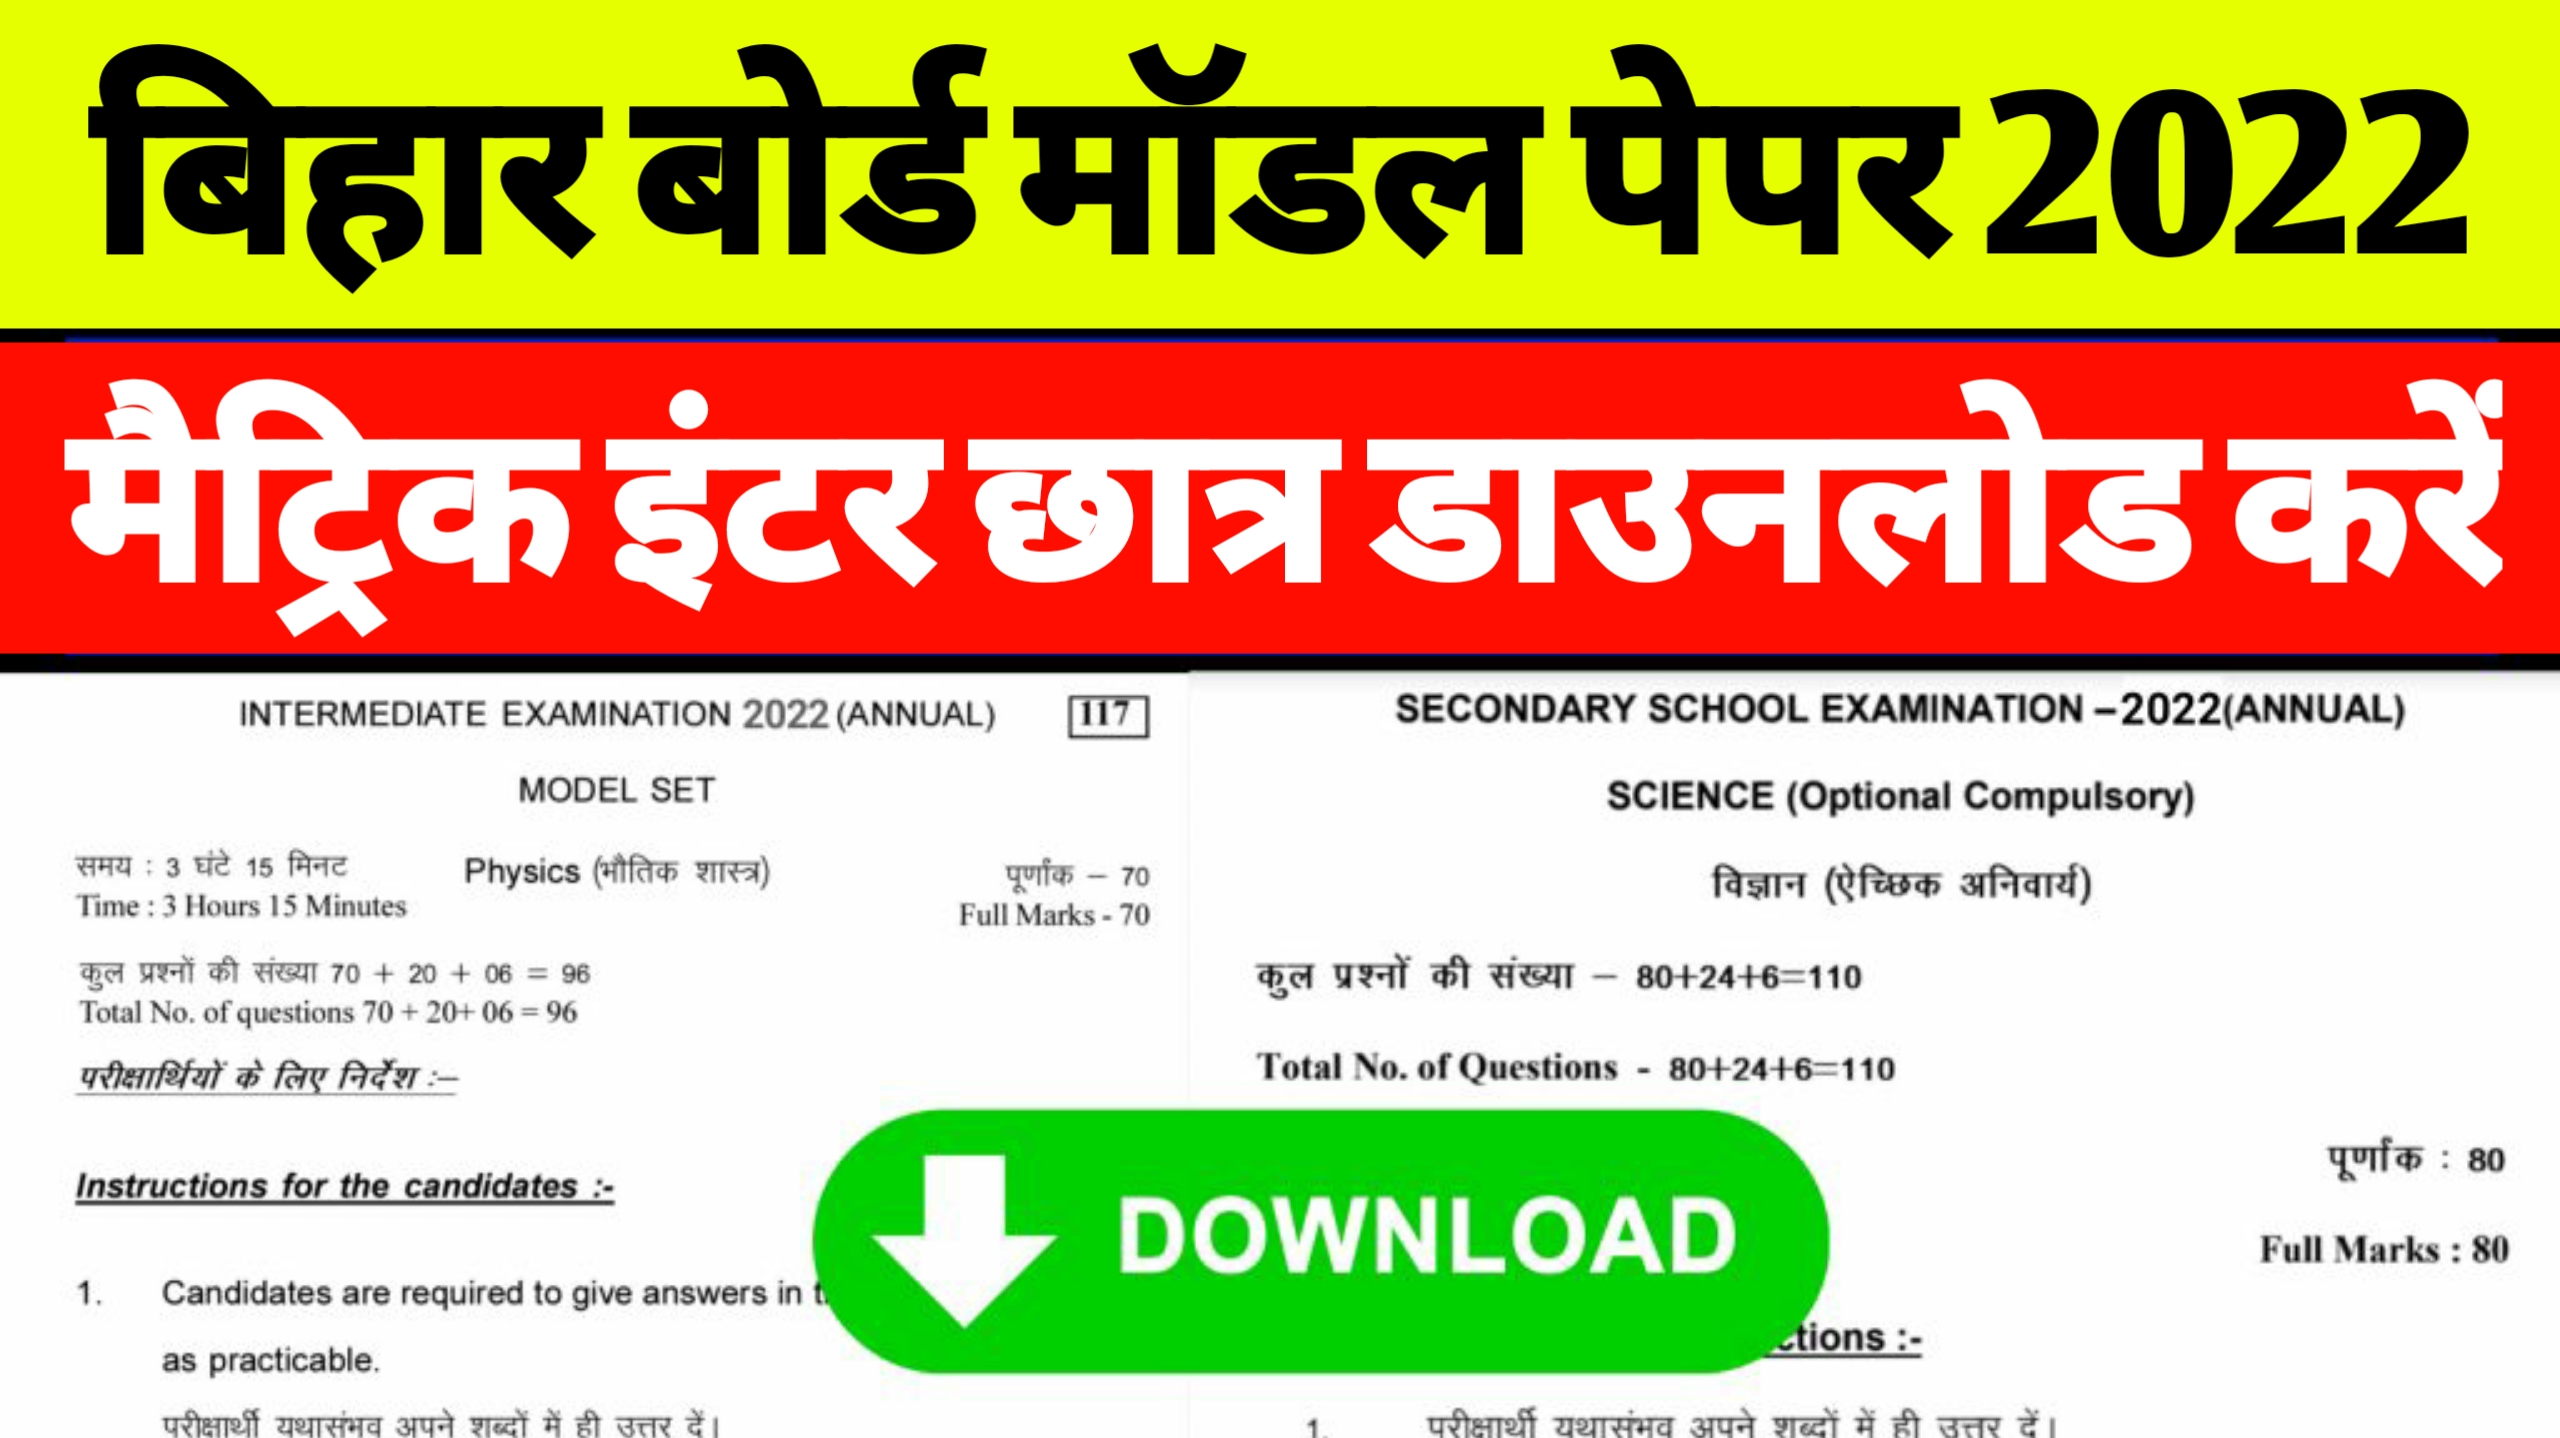 Bihar Board Model Paper 2022 Pdf Download | Matric Inter Exam 2022 Ka Model Paper Download Kaise Kare